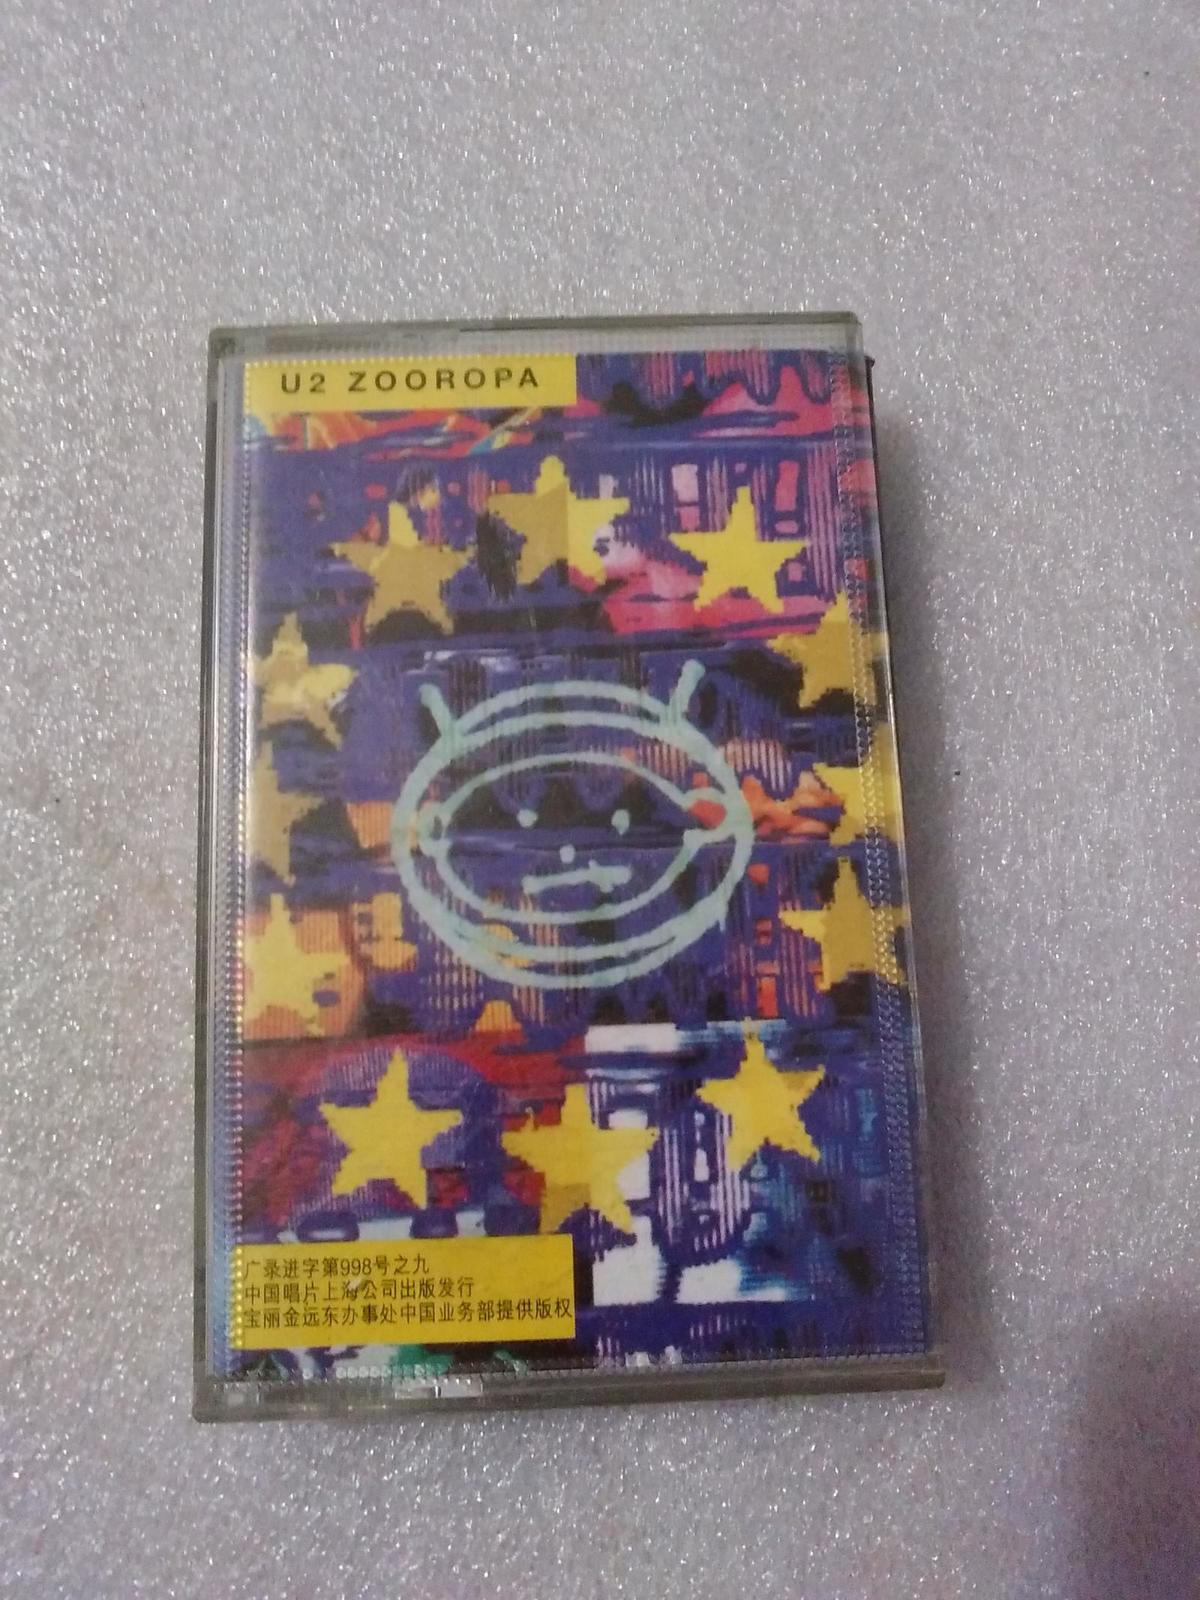 磁帶：U2樂隊·索羅巴（有歌詞）中國唱片上海公司出版【貨號：73】自然舊。正版。正常播放。詳見書影。